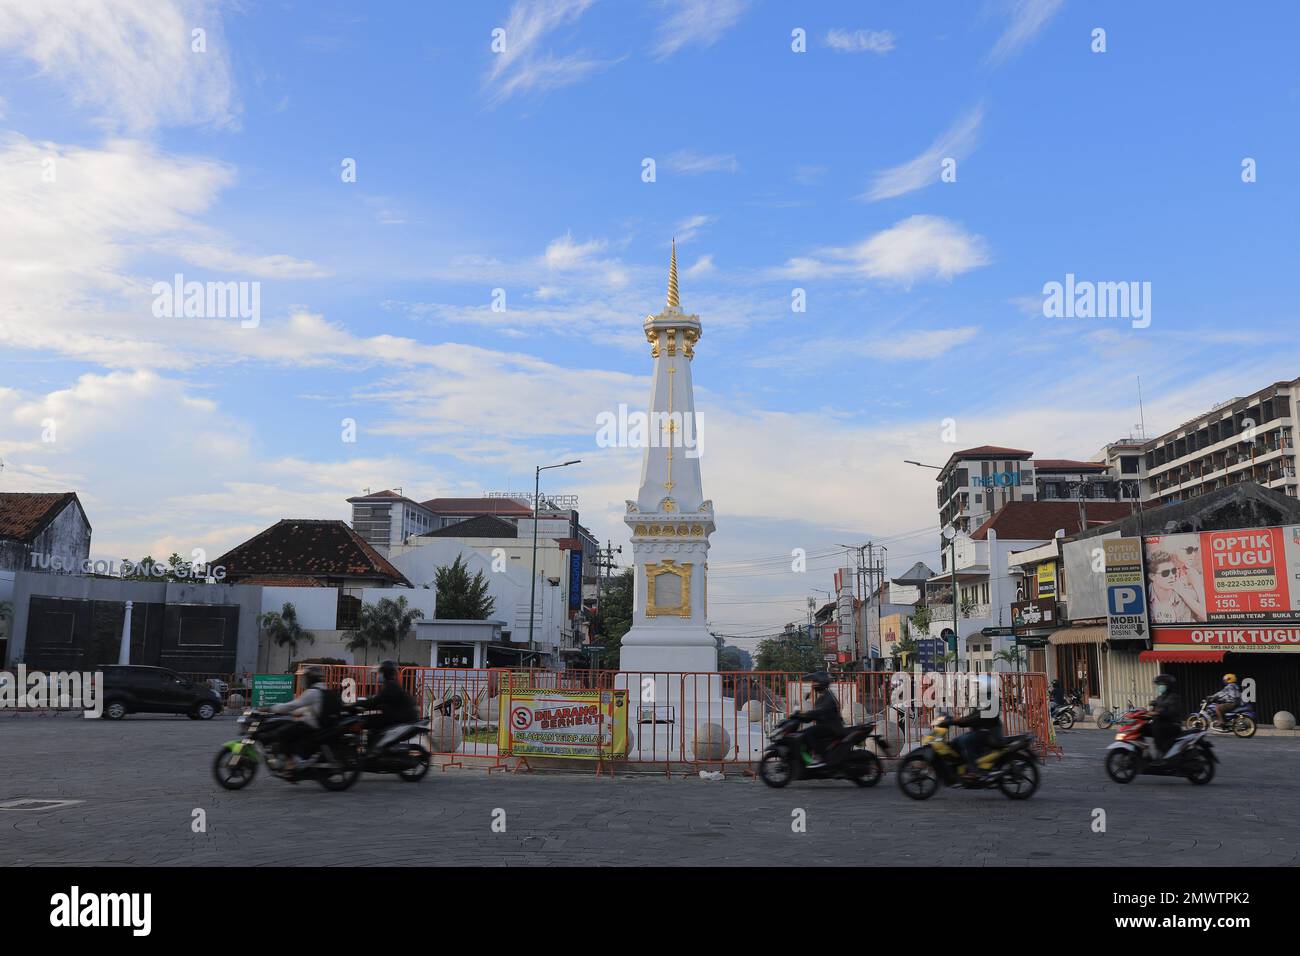 Wunderschöne Aussicht am Morgen am Yogyakarta Monument (Indonesisch: Tugu Yogyakarta). Yogyakarta, Indonesien - 05. März 2021. Stockfoto